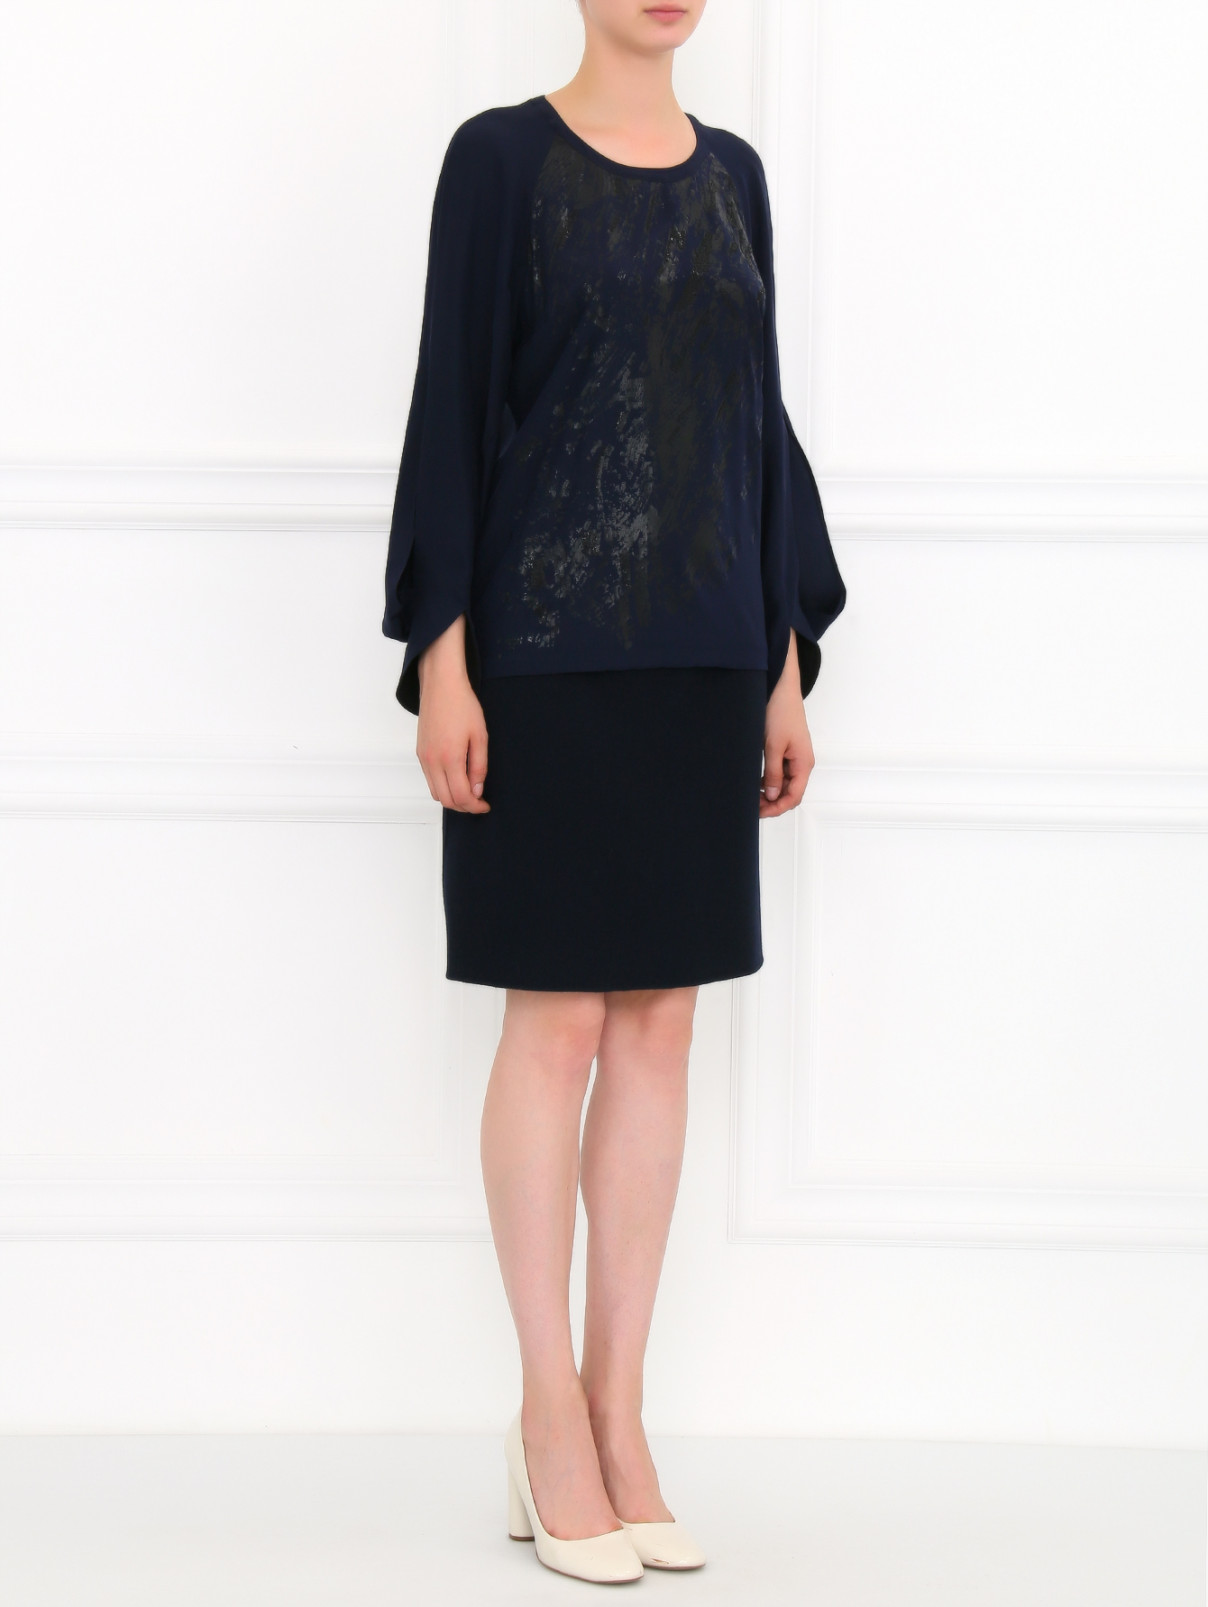 Блуза из шелка с декоративной отделкой Barbara Bui  –  Модель Общий вид  – Цвет:  Синий